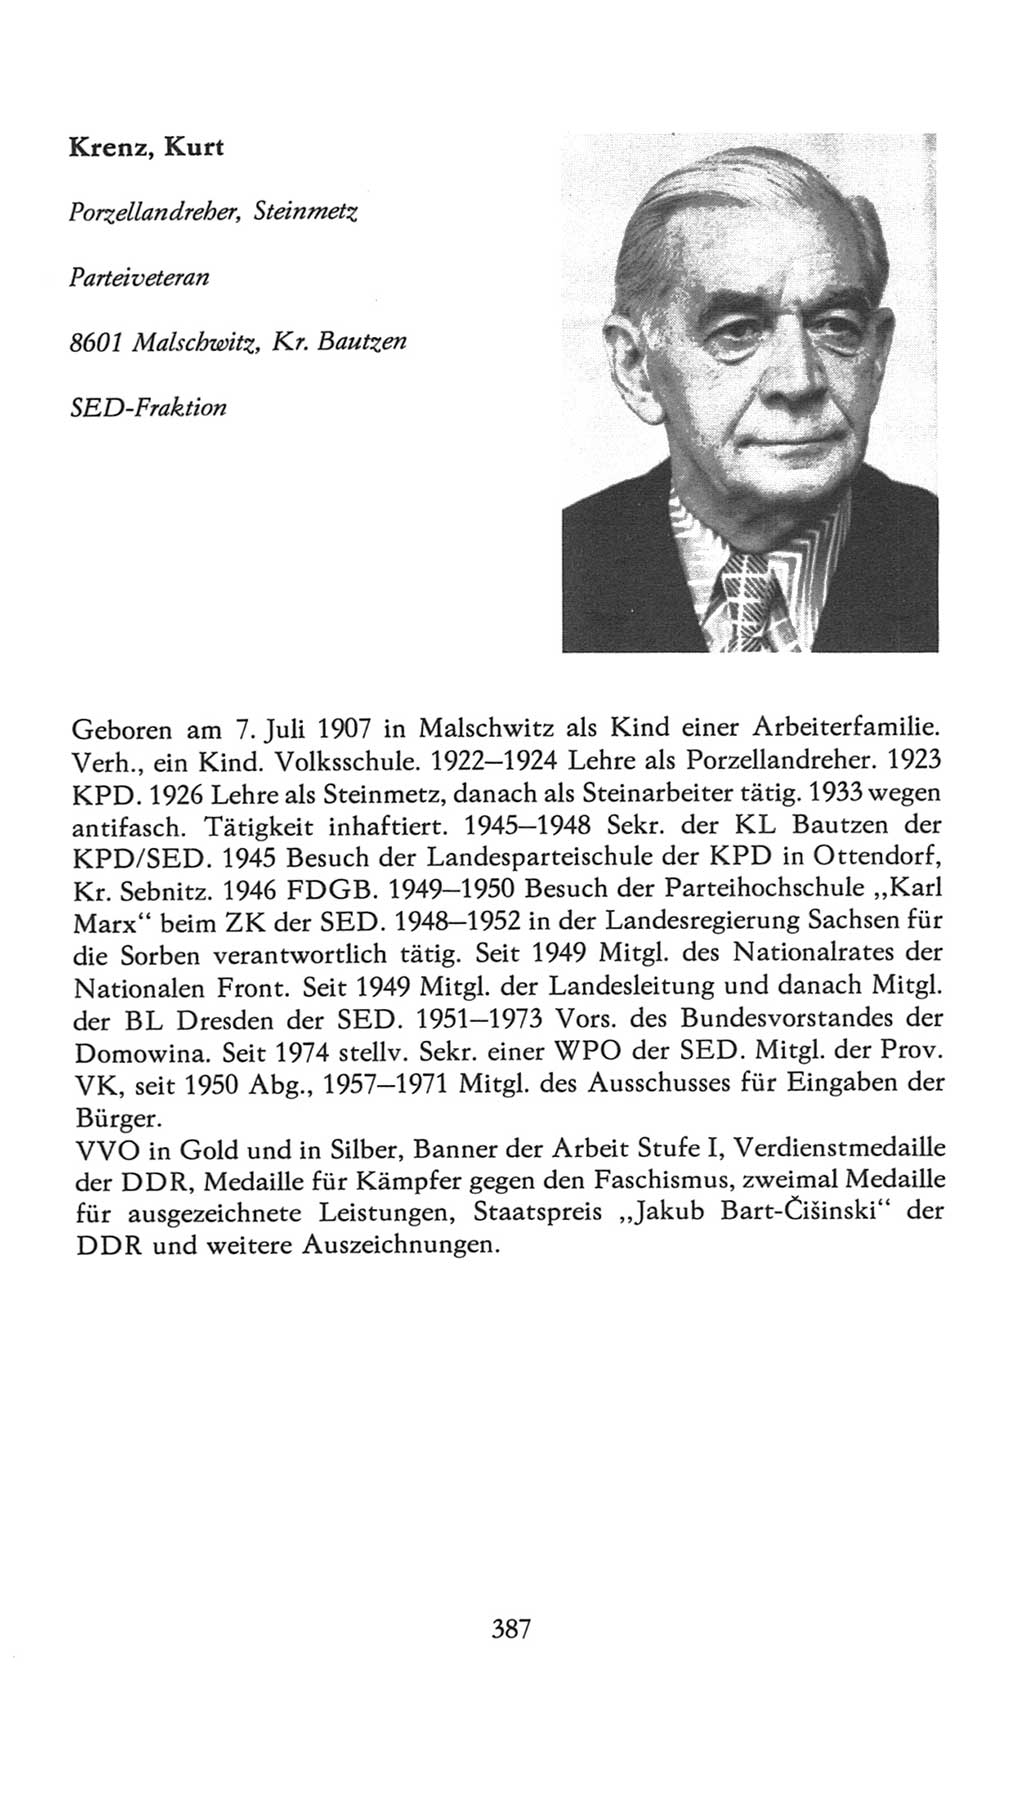 Volkskammer (VK) der Deutschen Demokratischen Republik (DDR), 7. Wahlperiode 1976-1981, Seite 387 (VK. DDR 7. WP. 1976-1981, S. 387)